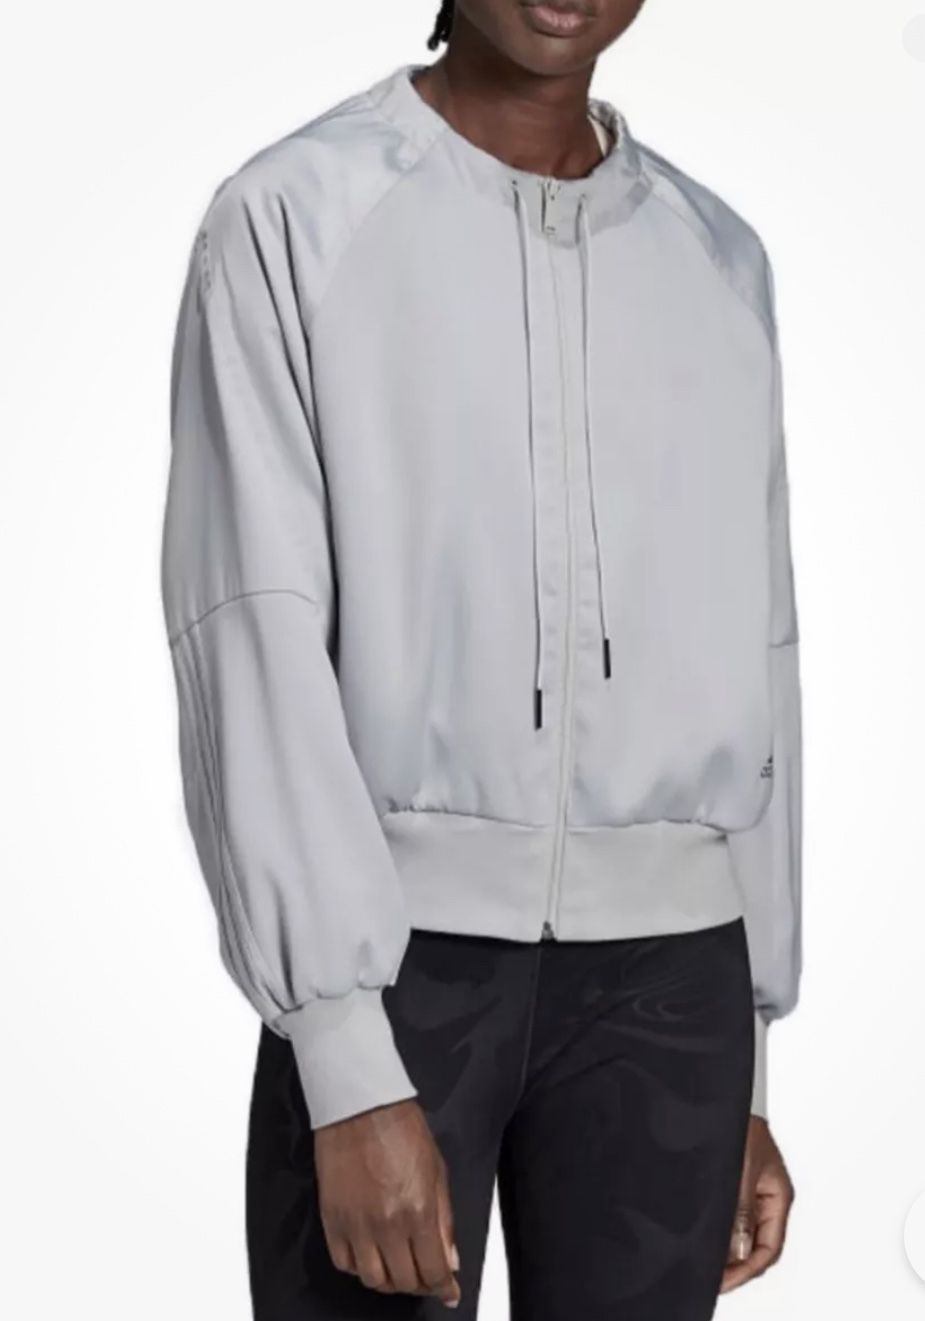 Adidas Women's Glam On Bomber Jacket (Gray)  Size Medium NWT 